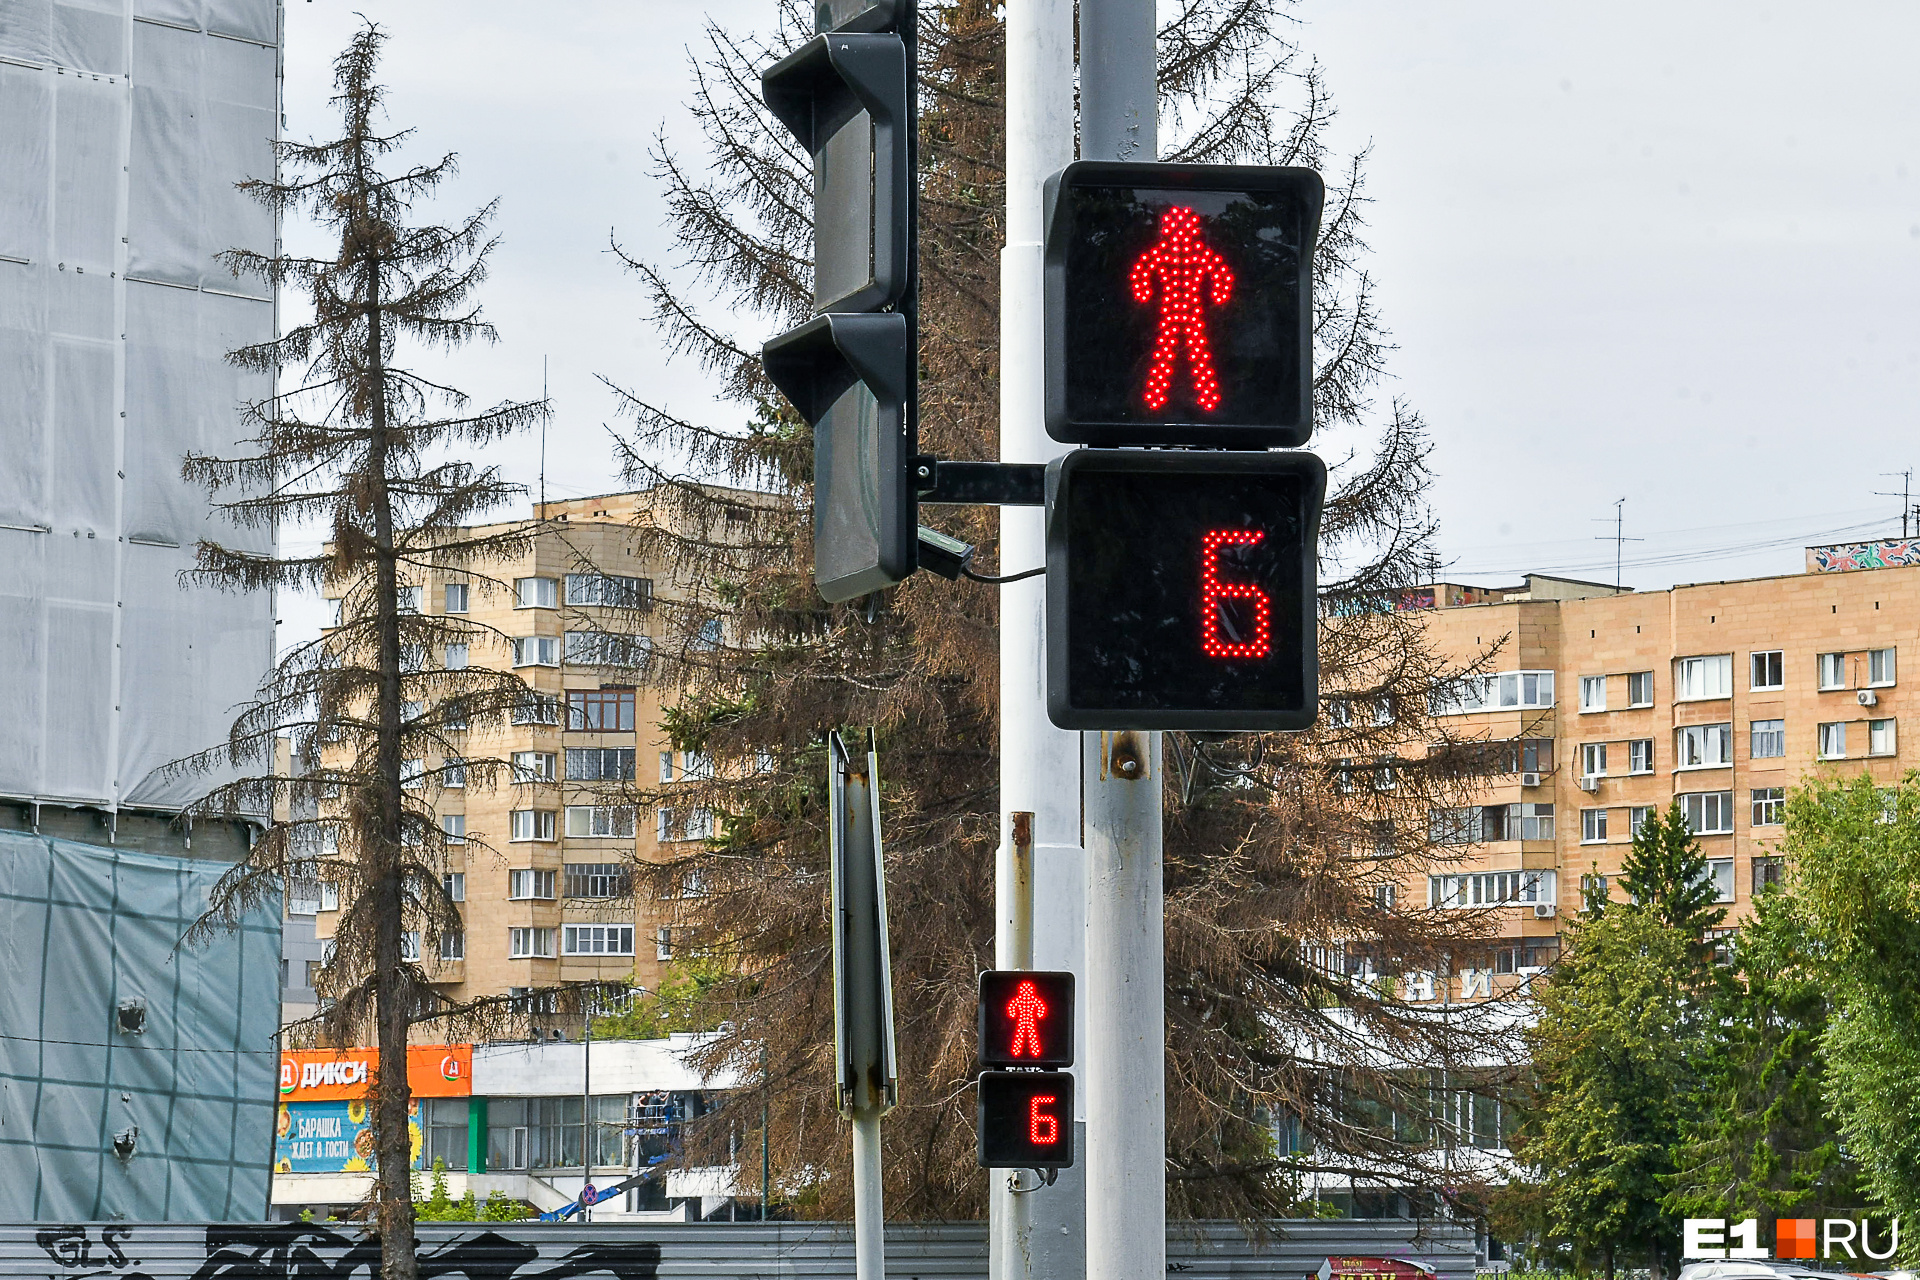 Благодаря новым светодиодам сигнал четко виден участникам дорожного движения, а еще на «экран» можно вывести любую картинку